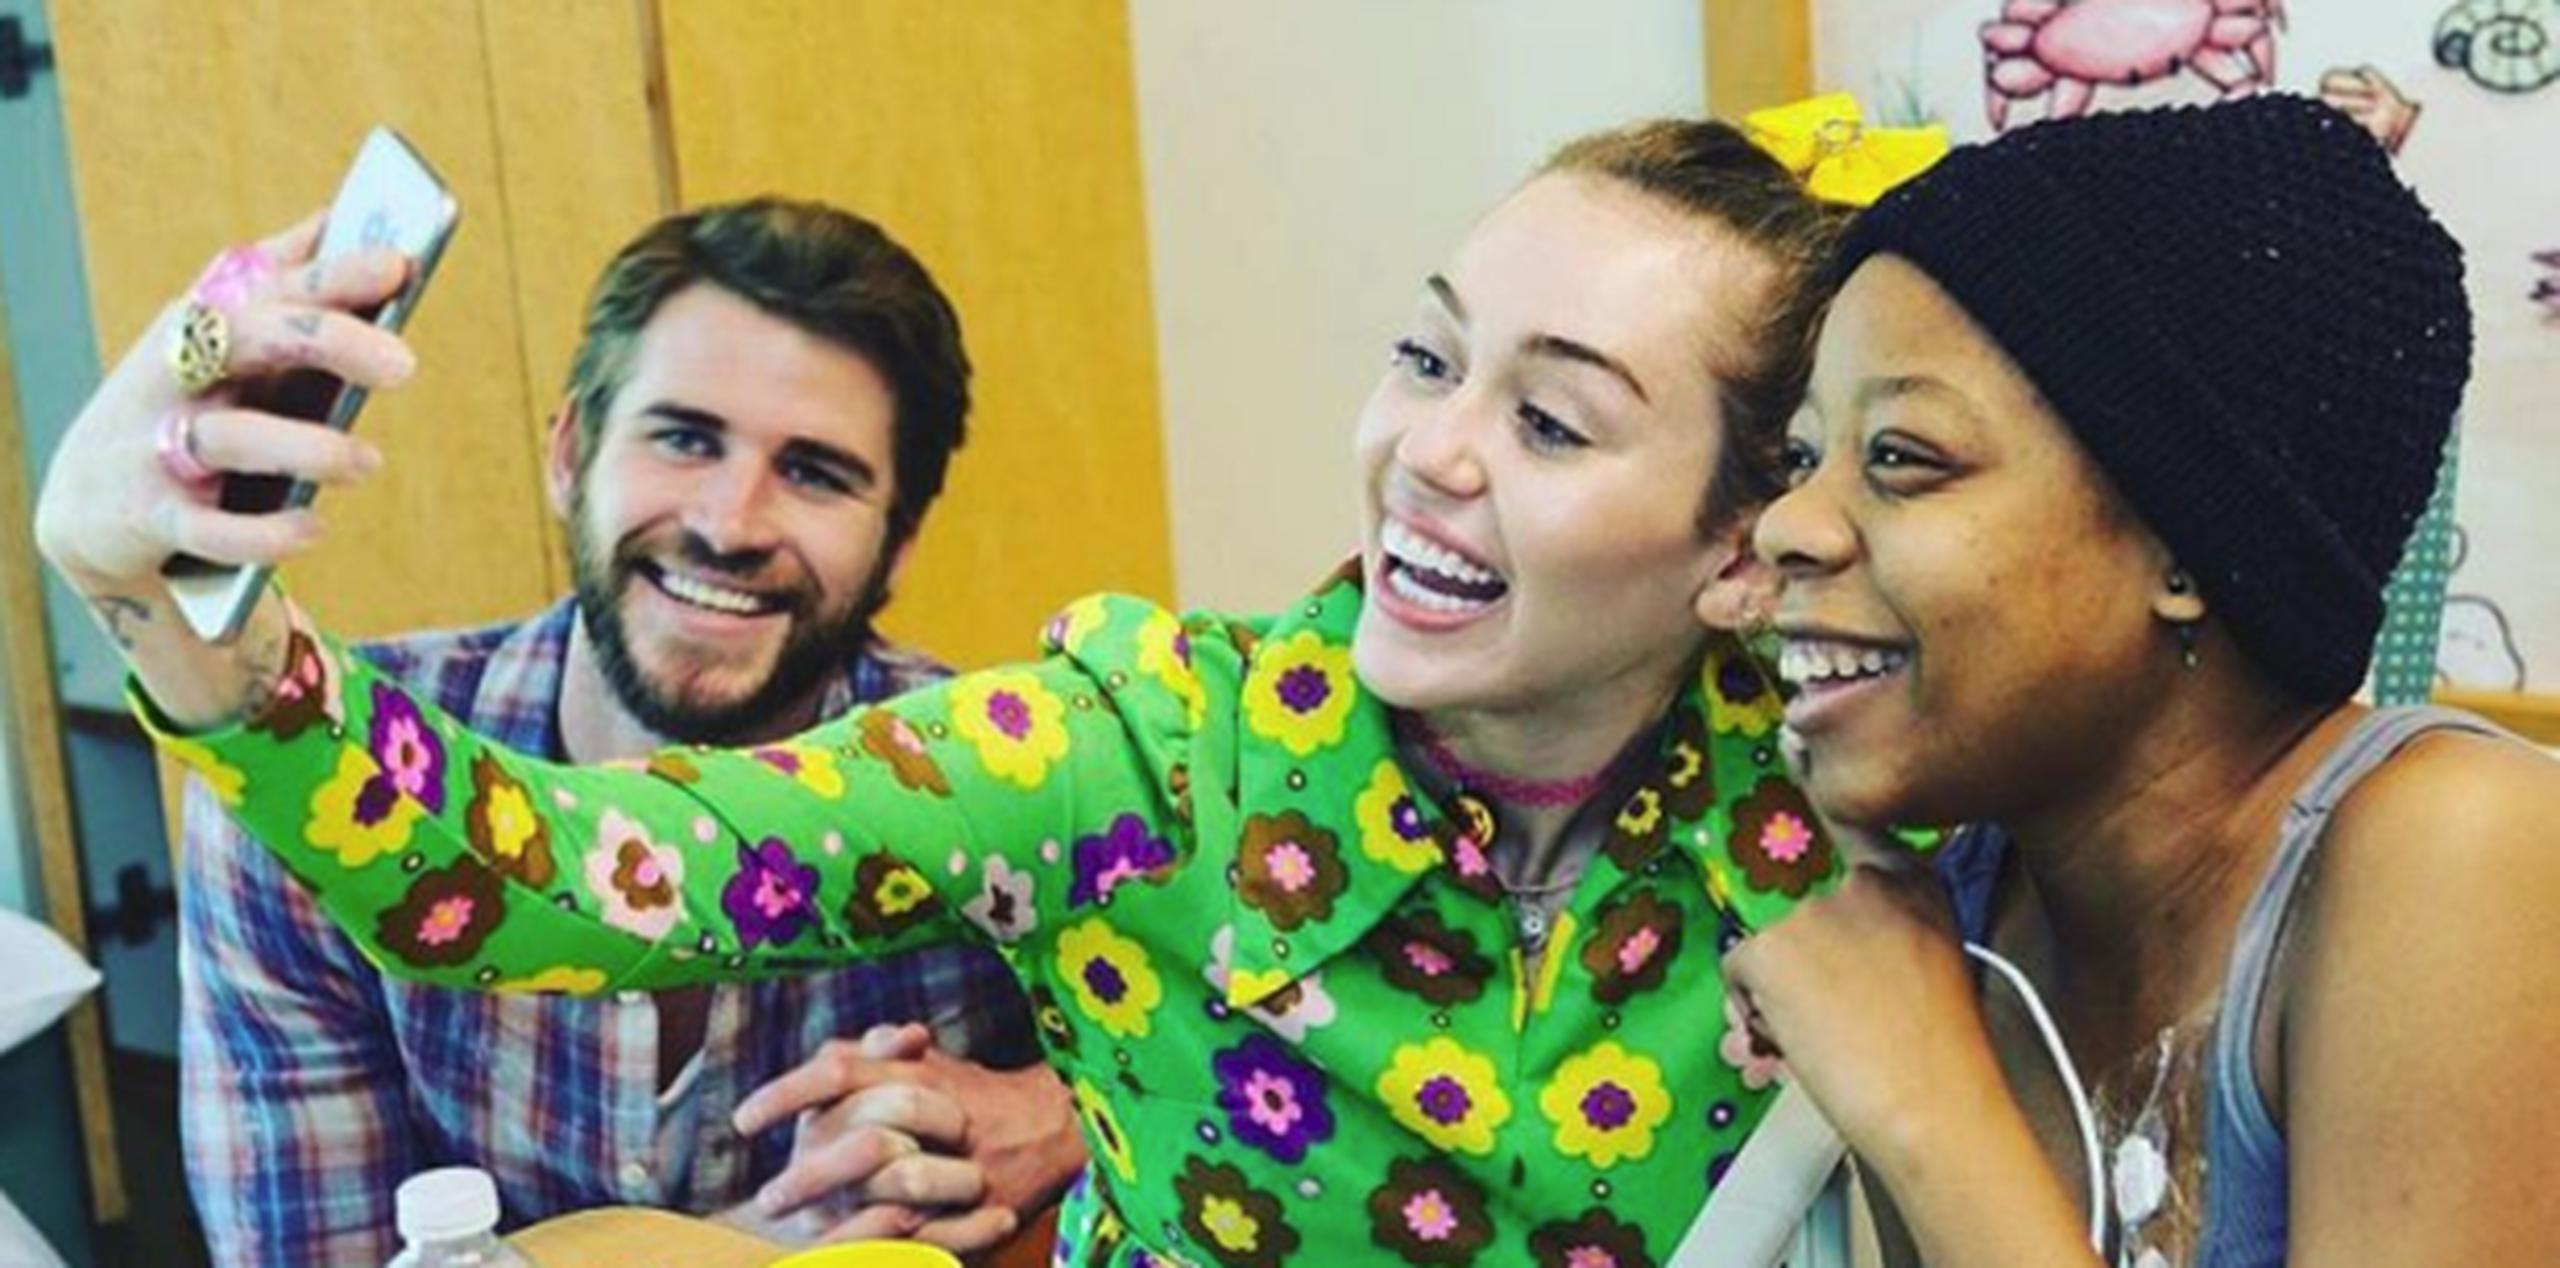 Liam y Miley tomándose un "selfie" con una de las pacientes. (Instagram)